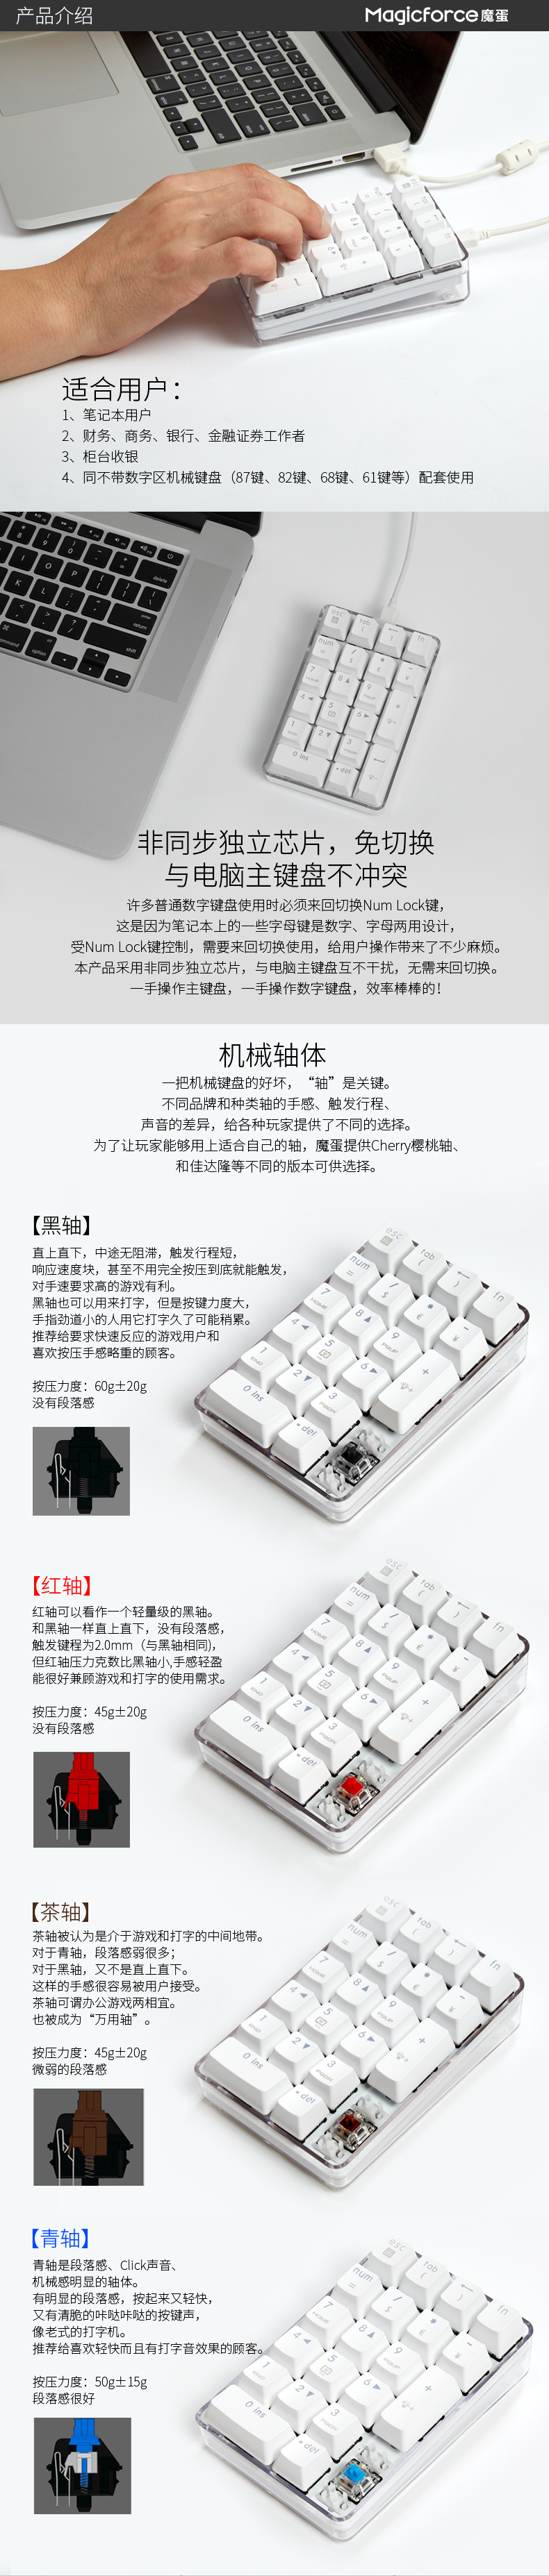 魔蛋晶体21产品详情PC端-晶体21键数字键盘-产品描述京东_02